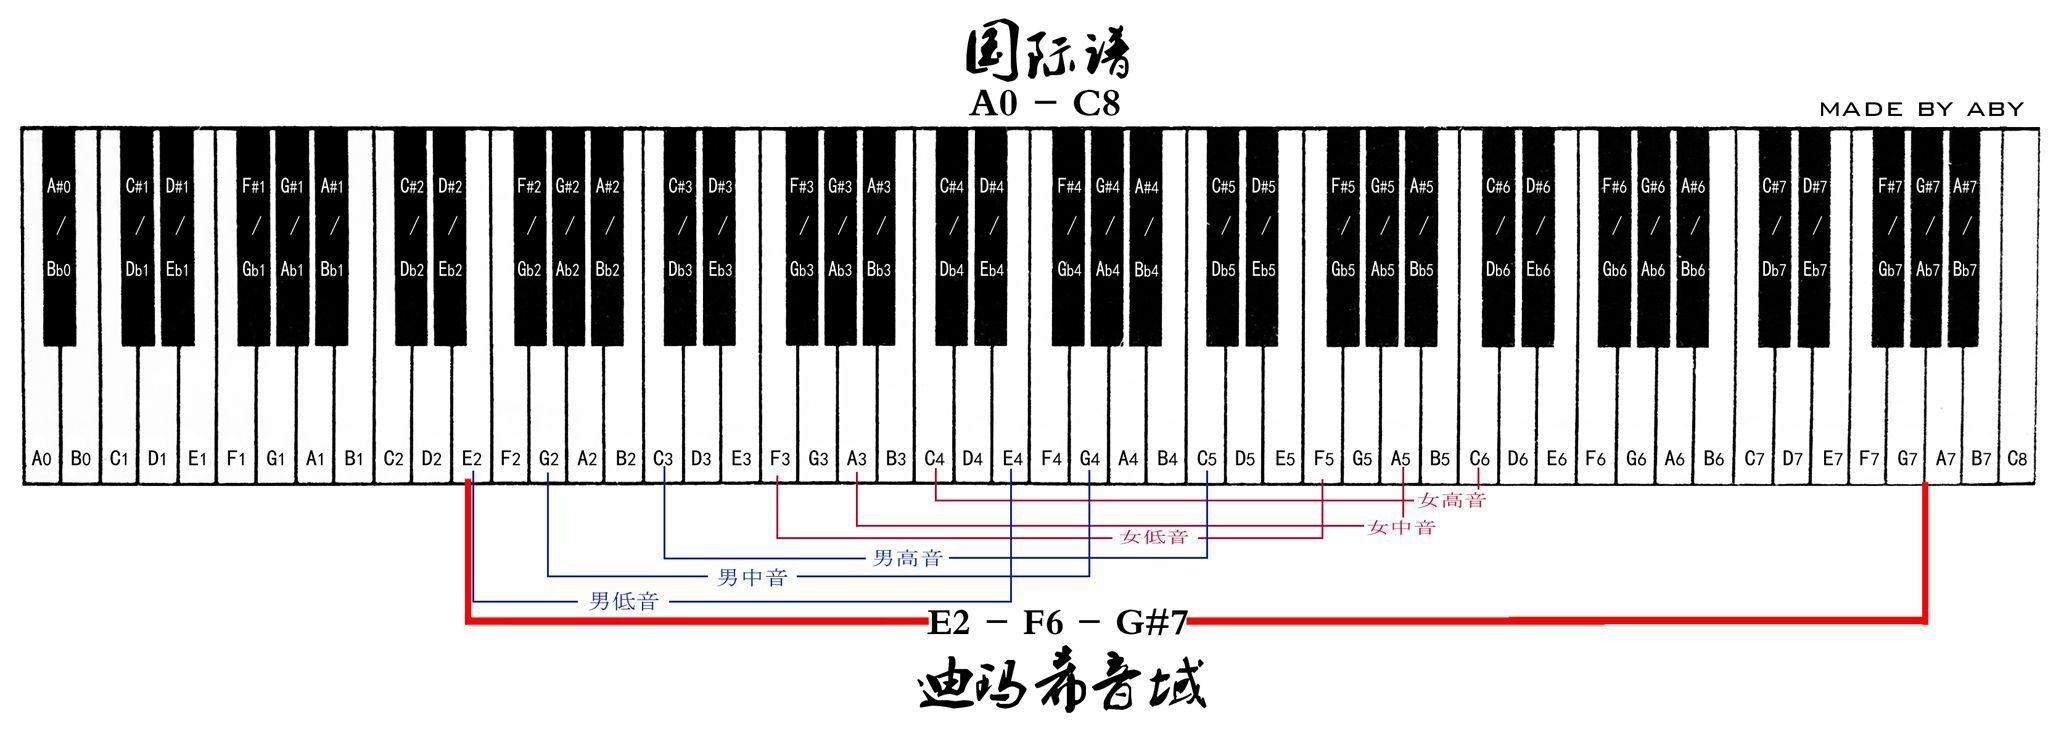 很多人都说迪玛希的最高音域是g7哨音,这个哨音到底是什么音?